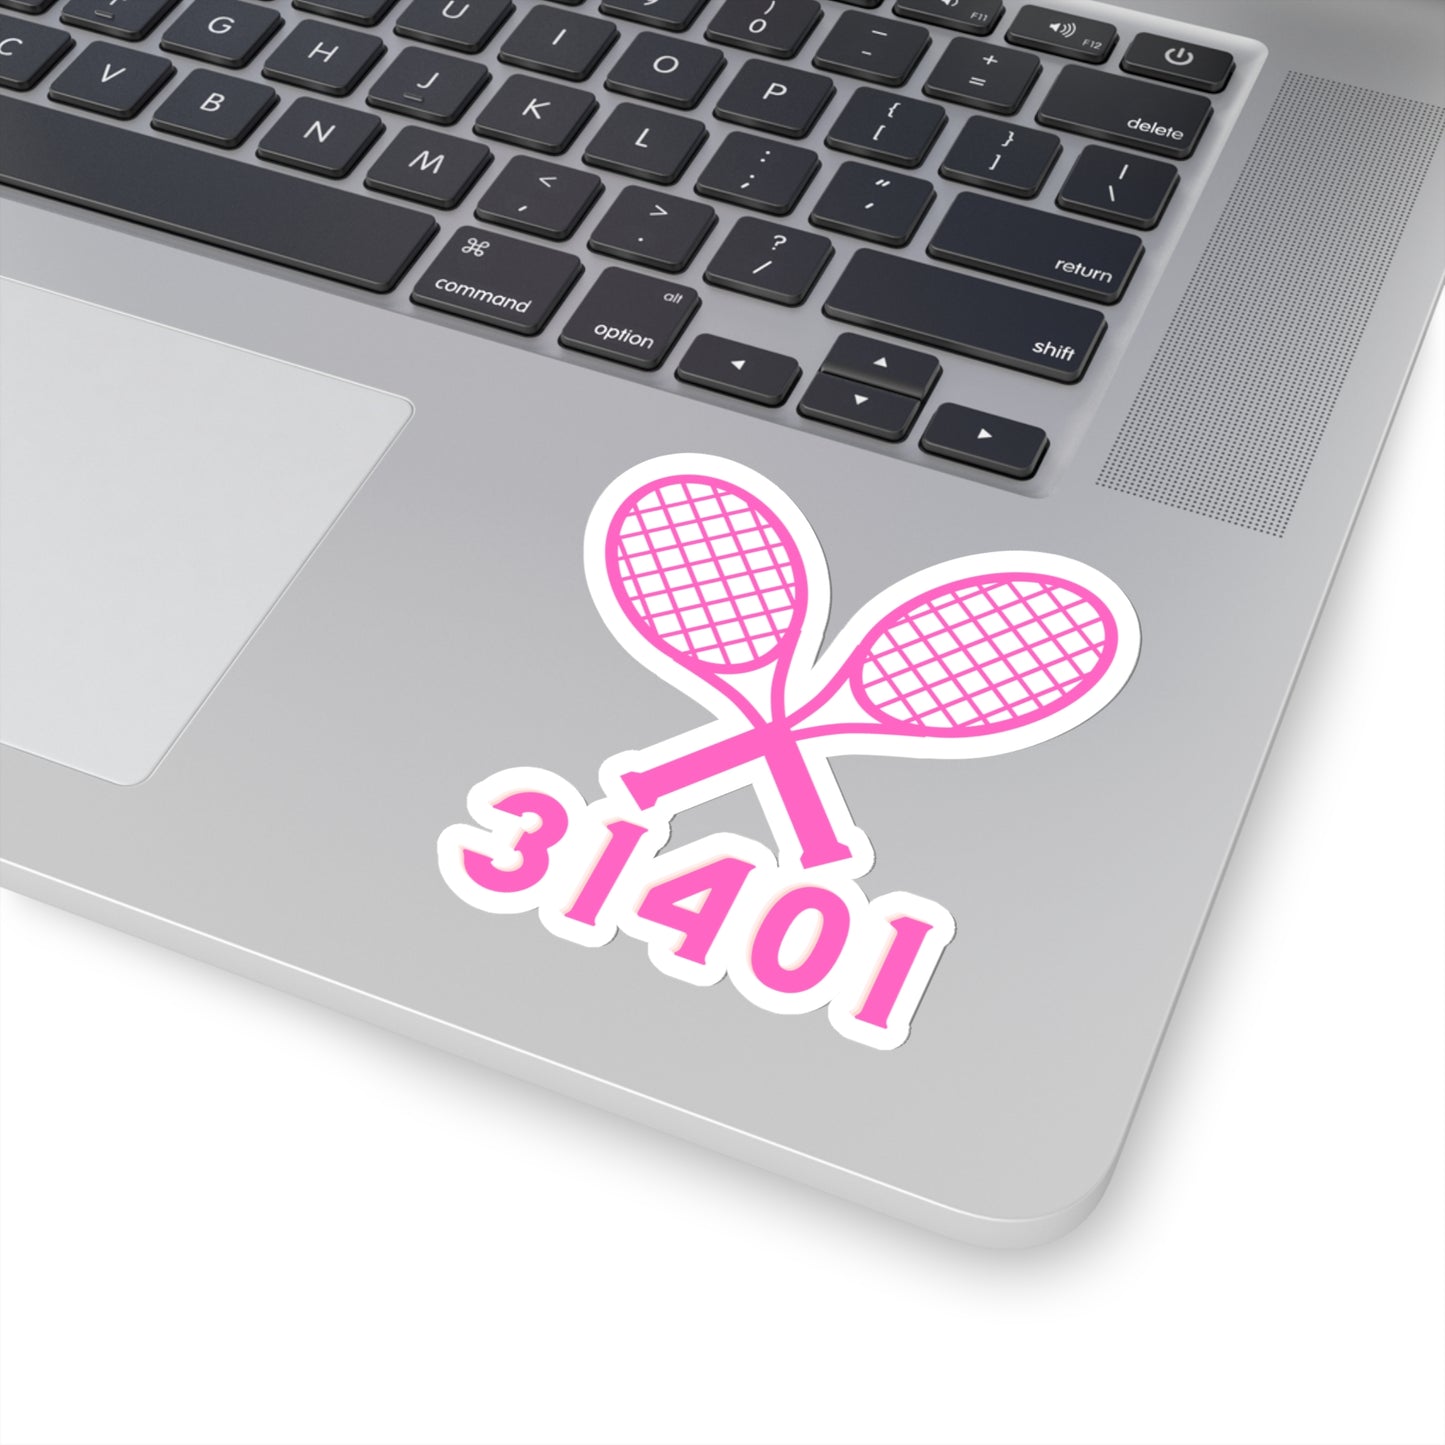 Tennis Sticker